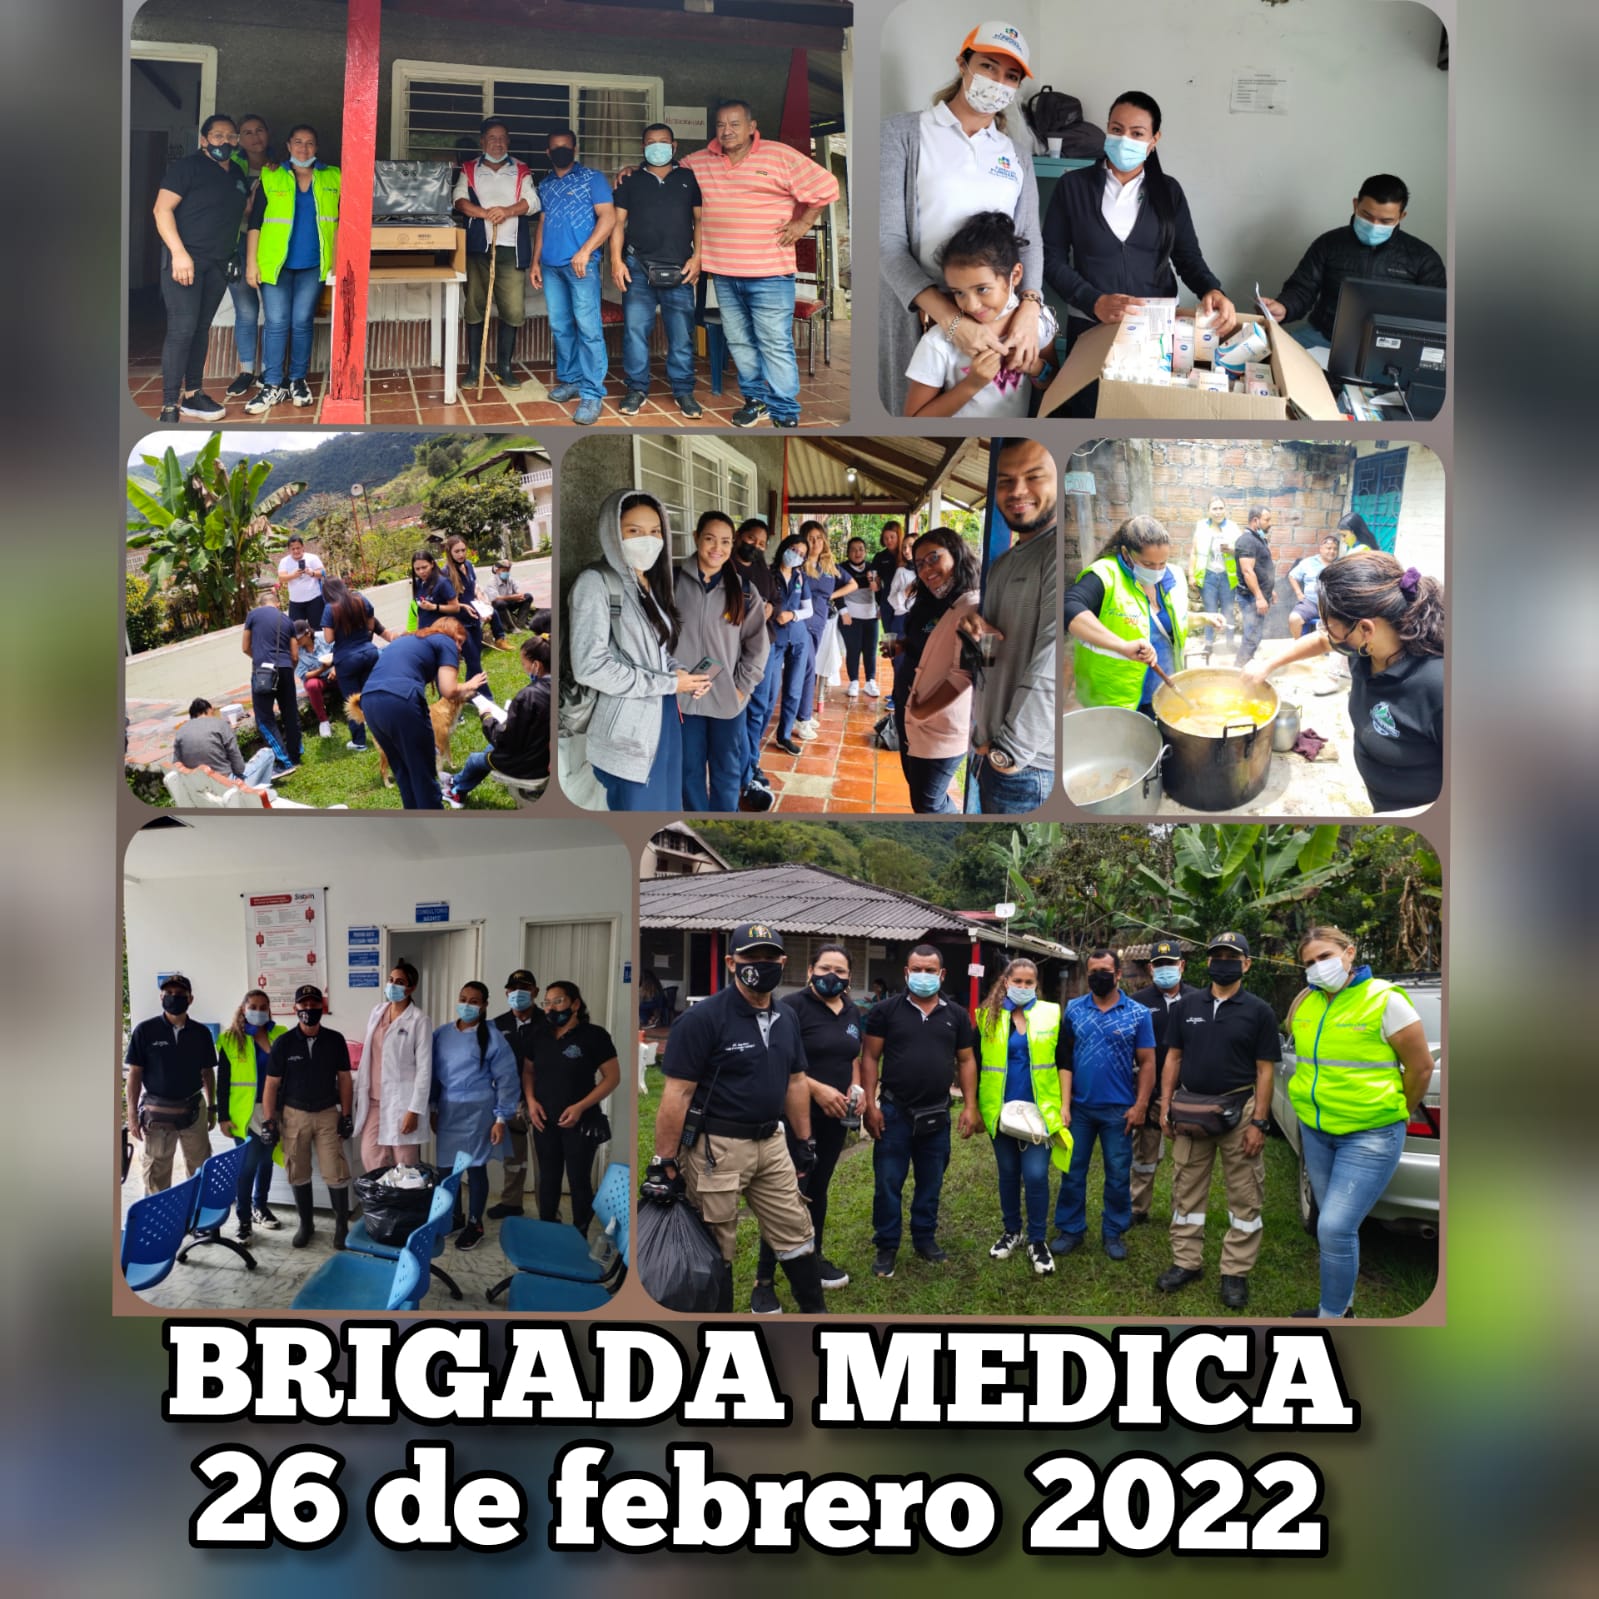 Brigada medica feb 2022